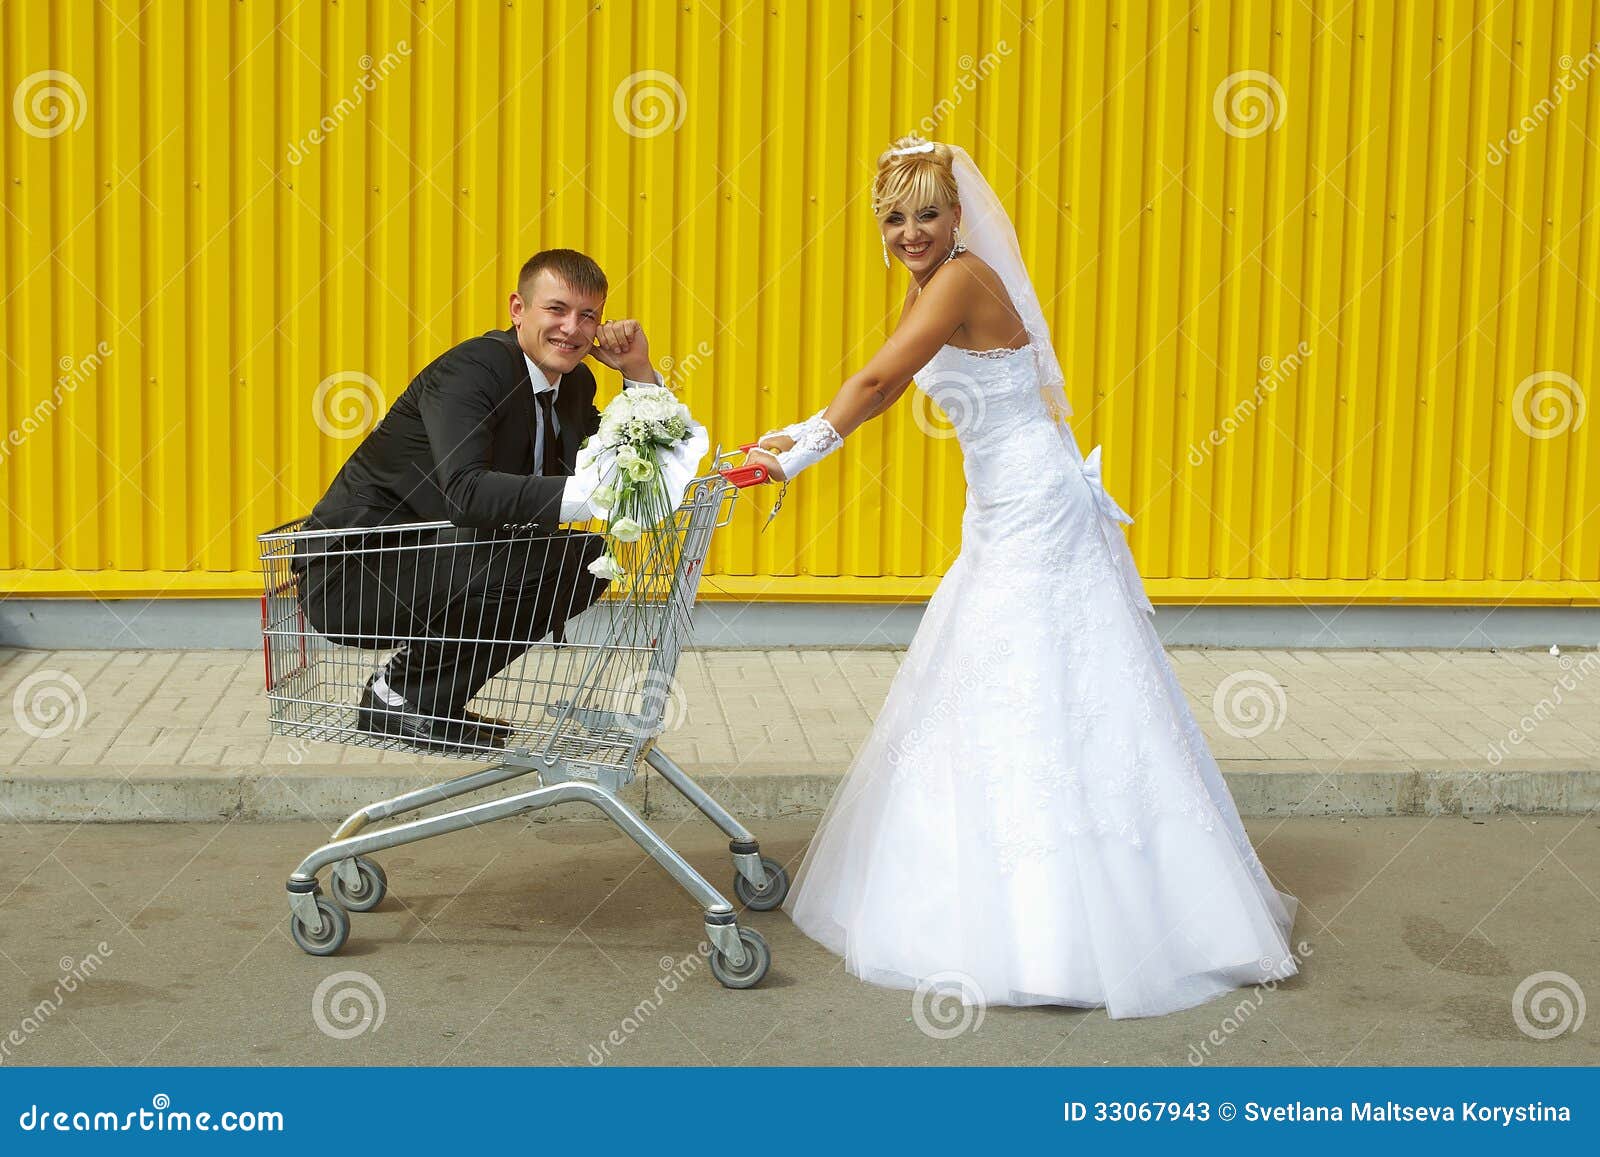 supermarket design clipart wedding